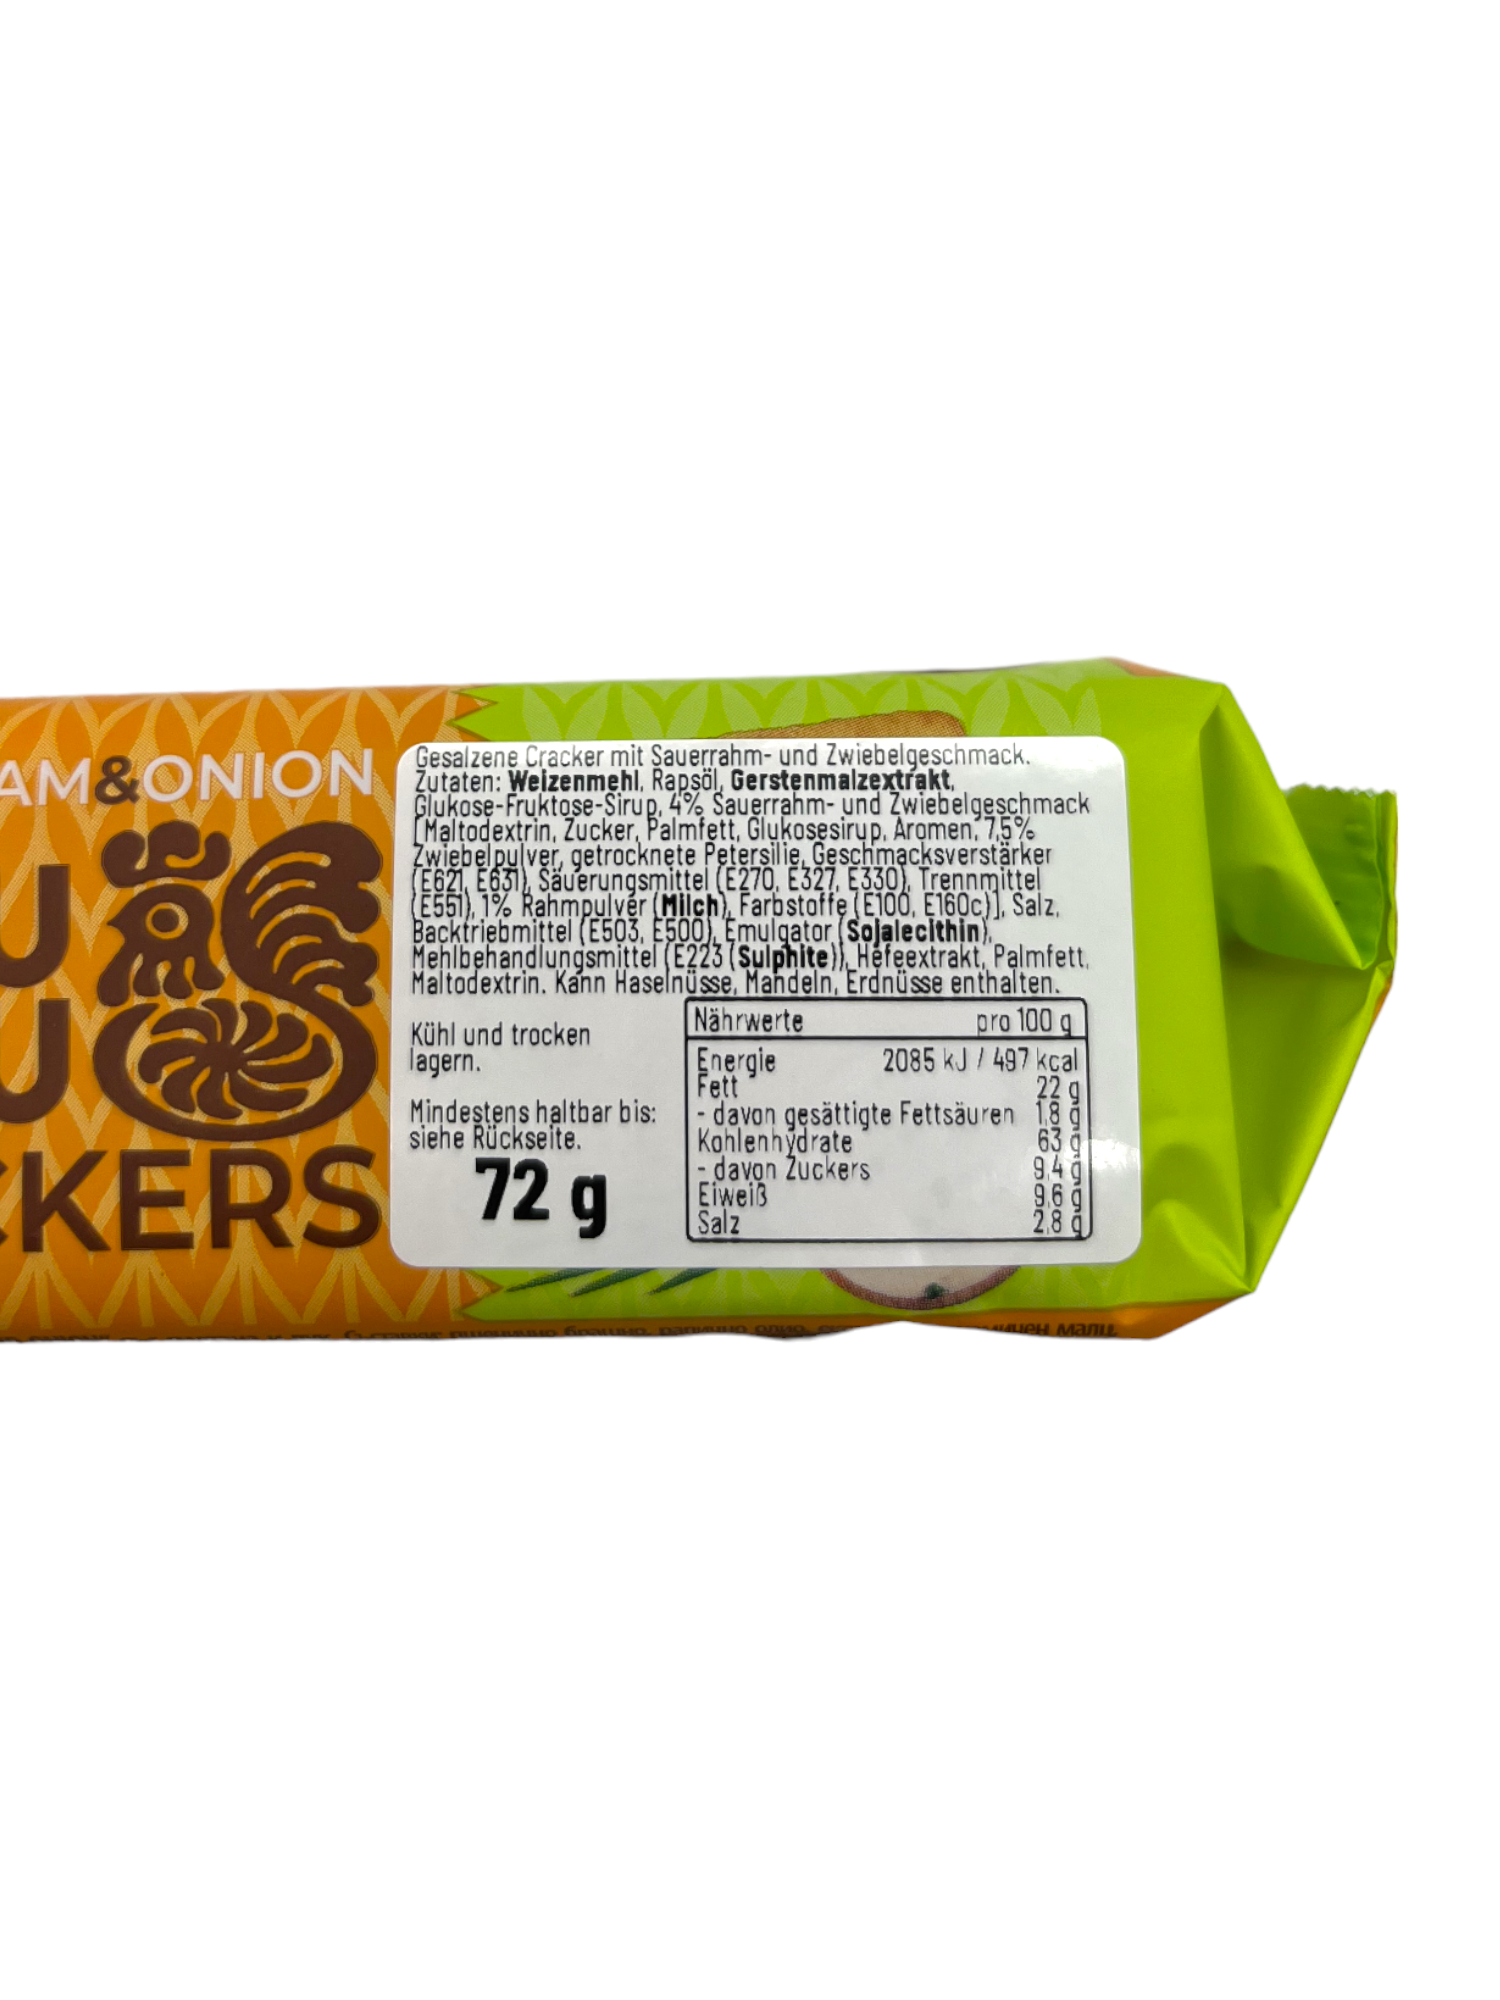 KukuRuku Cracker SourCream & Onion 72g